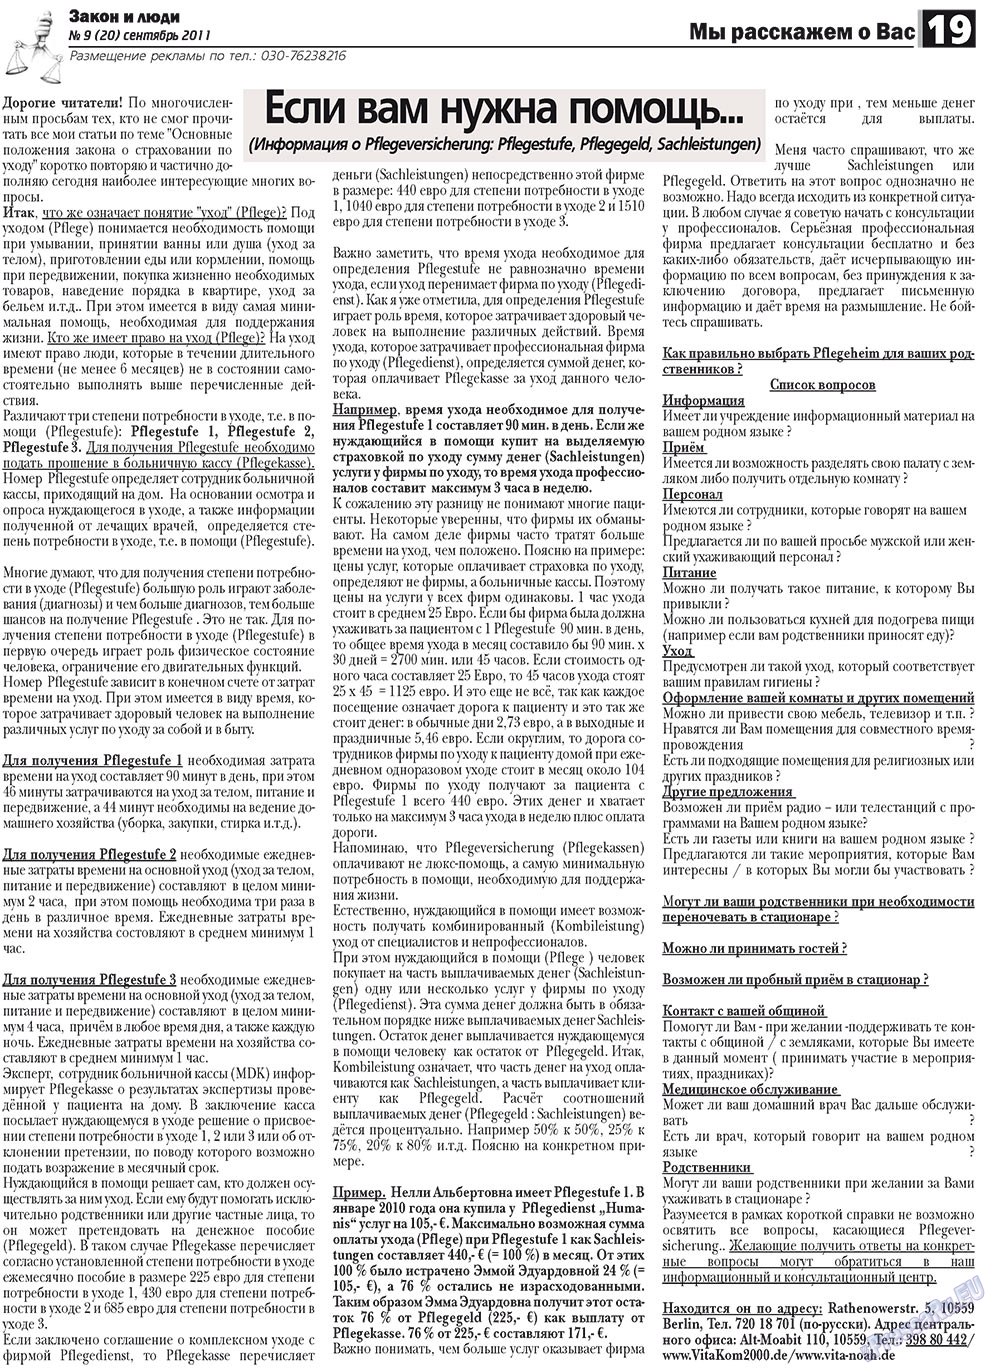 Закон и люди, газета. 2011 №9 стр.19